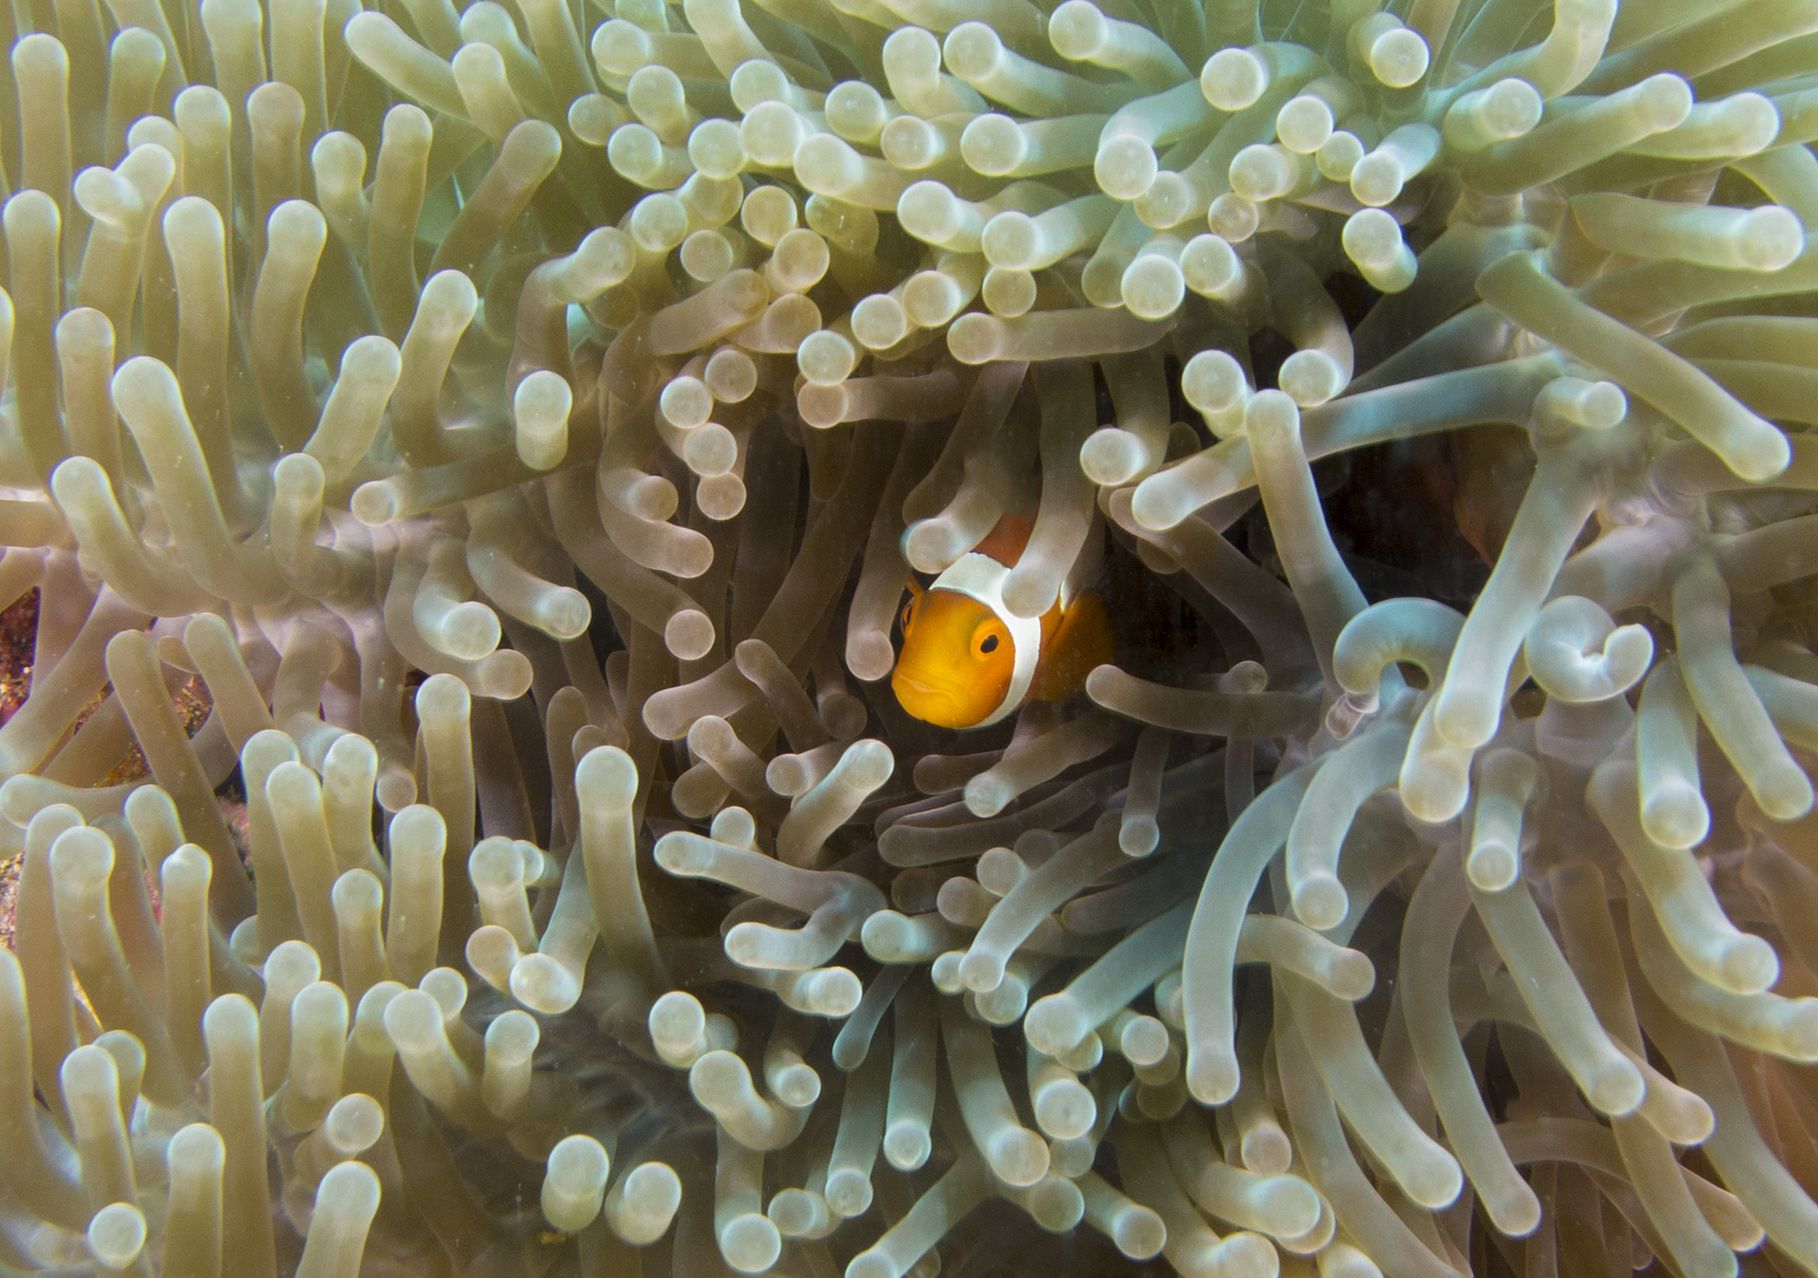 Curious Nemo!